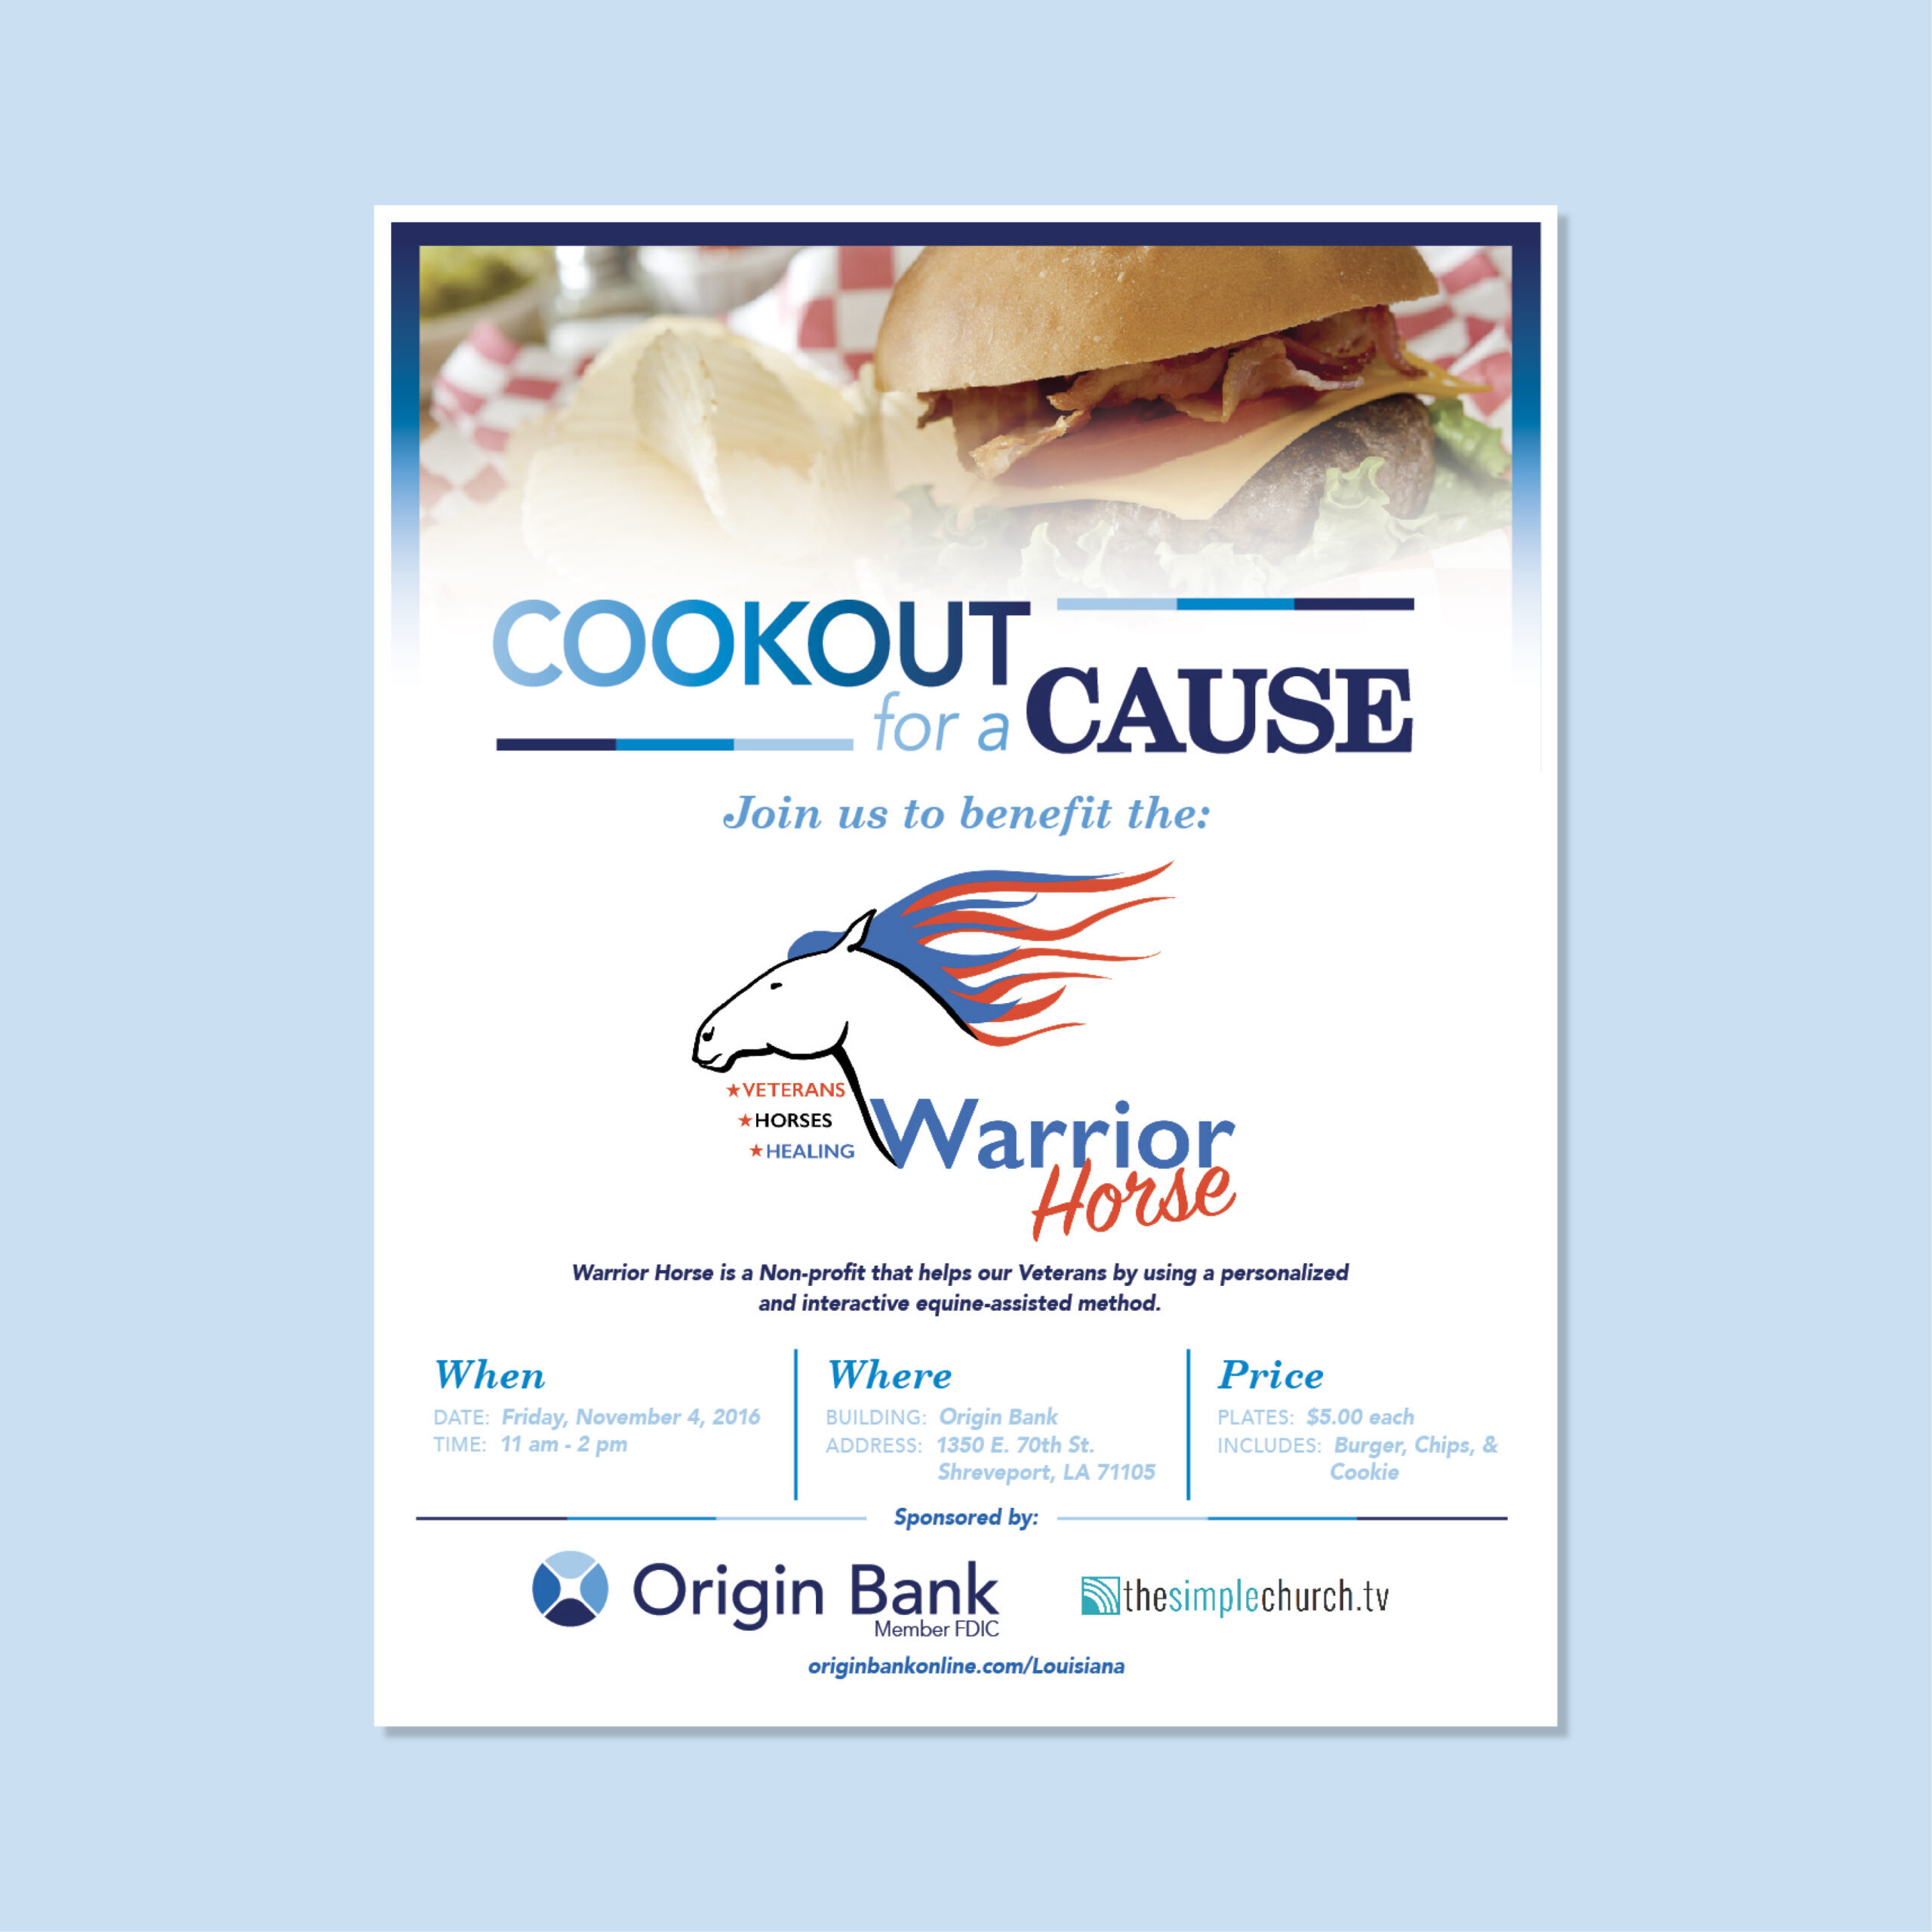 Origin-cookout-flyer